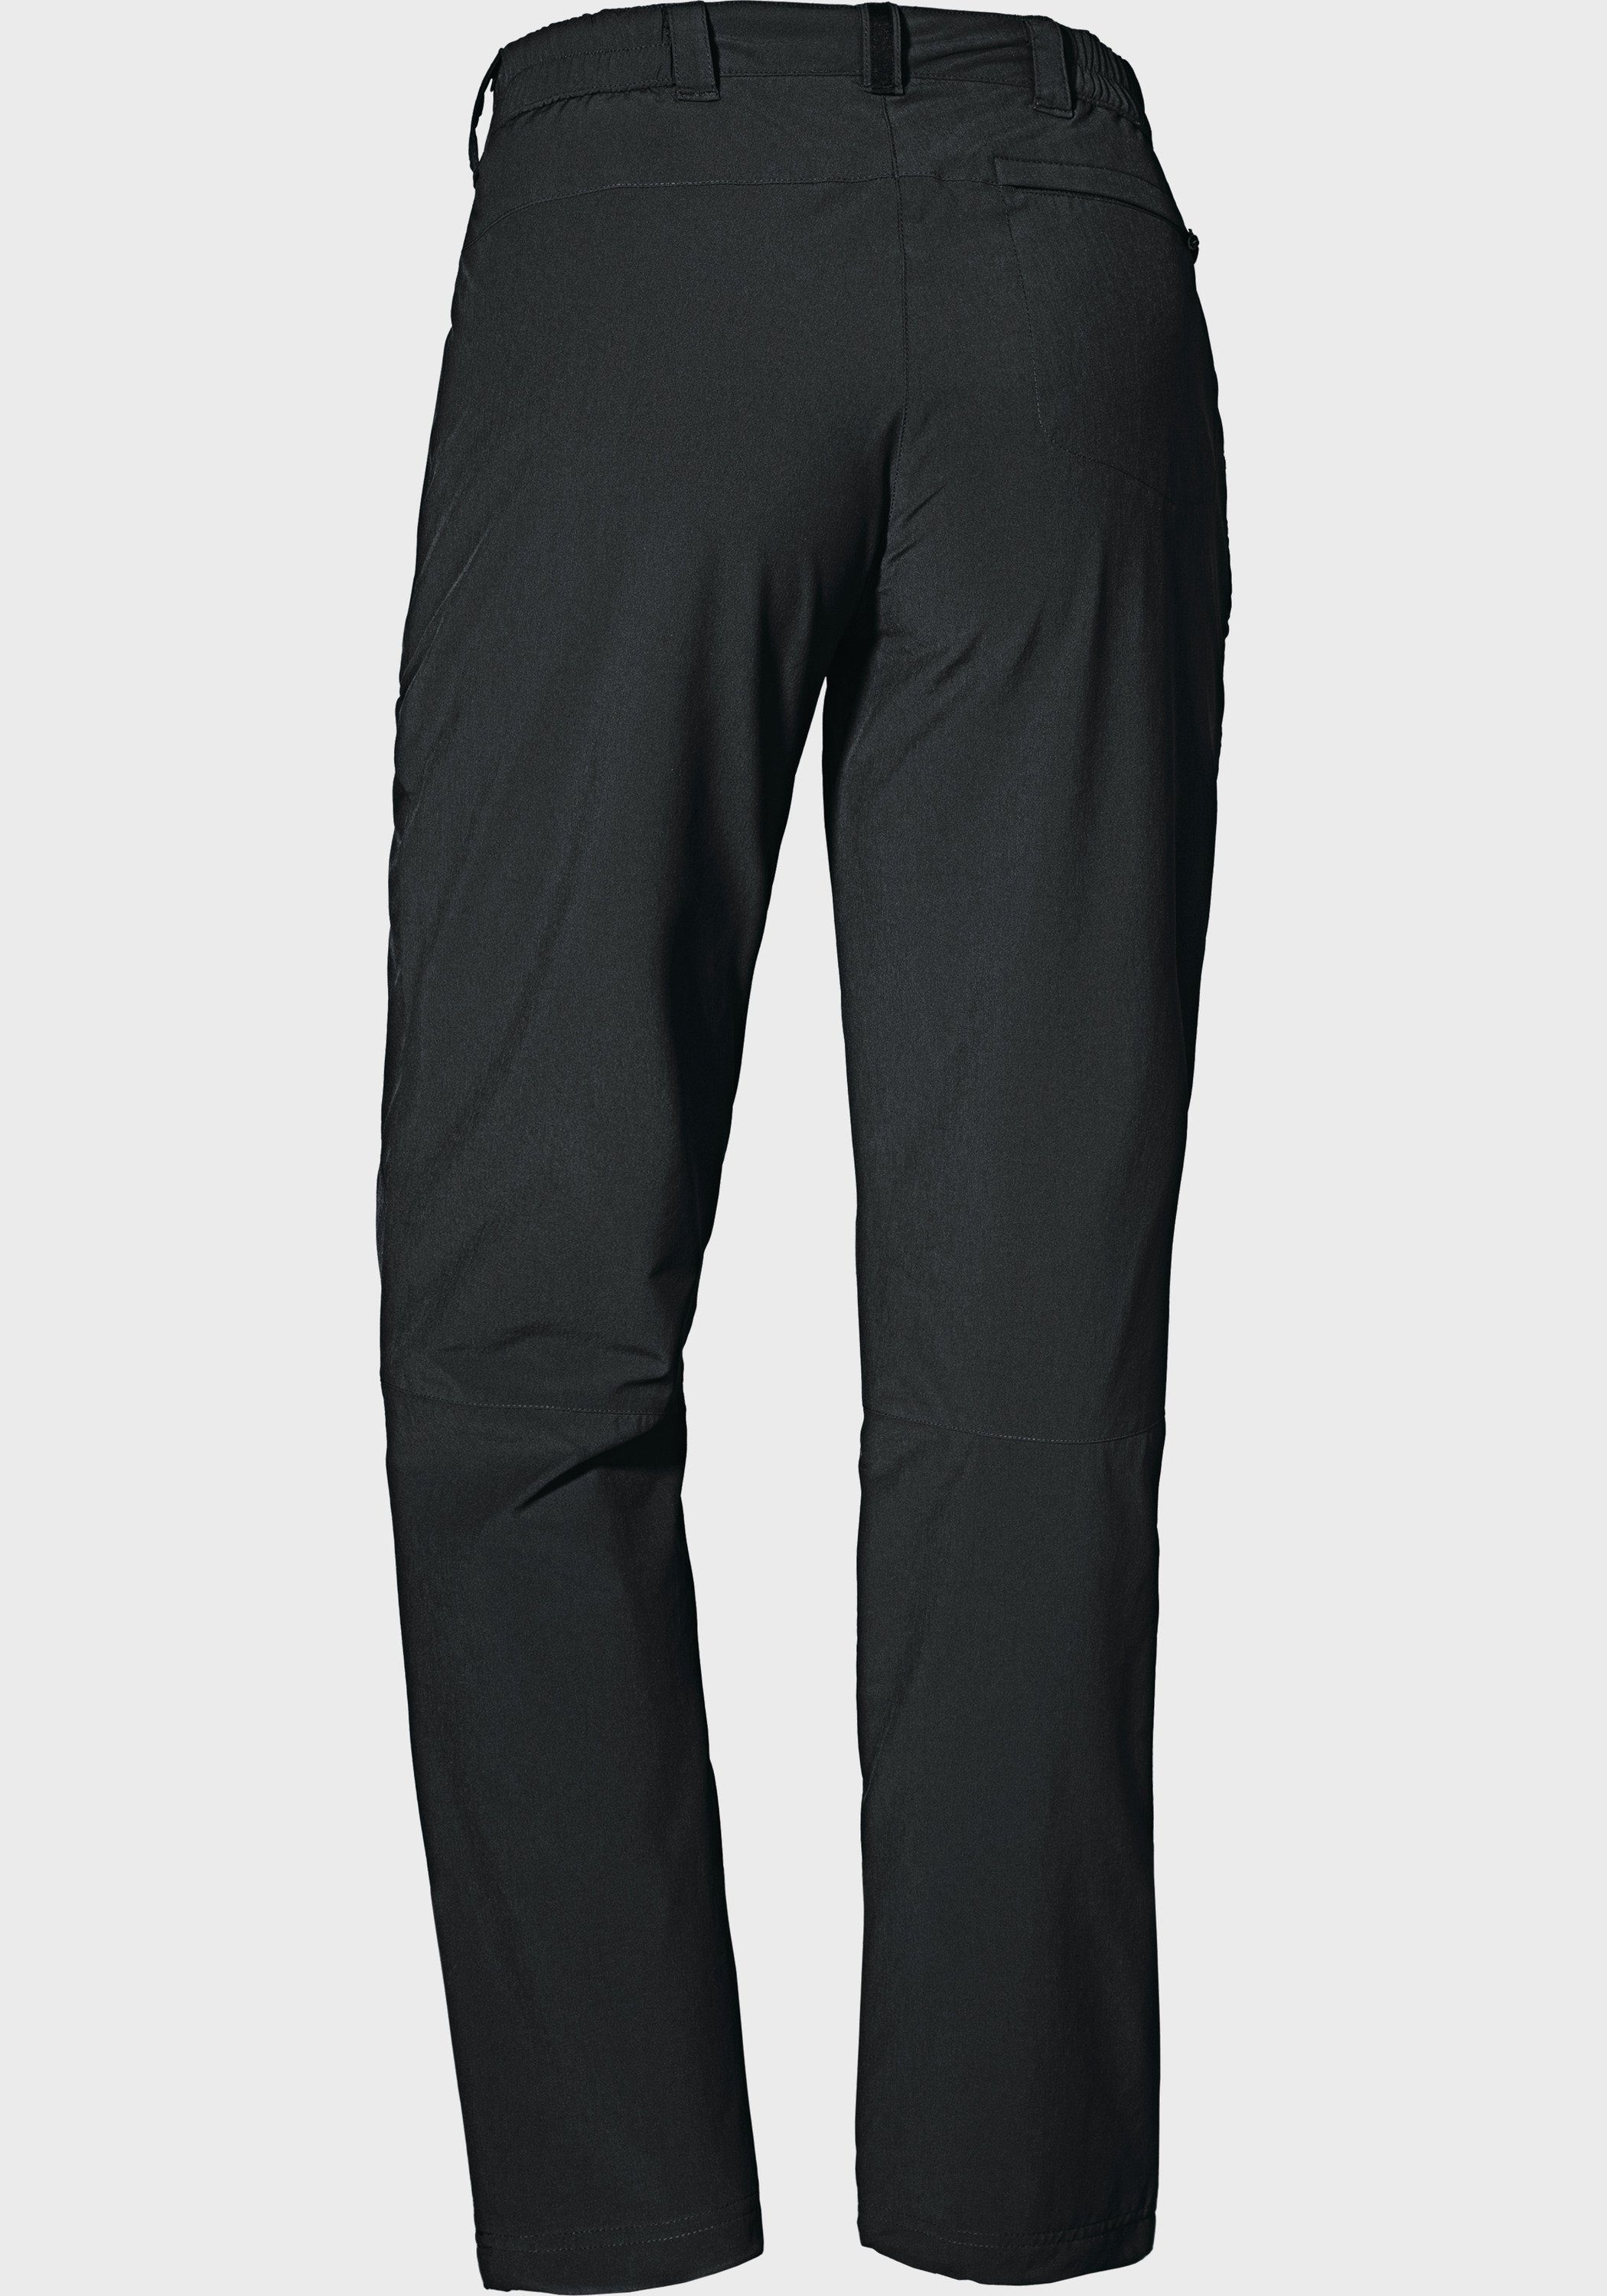 Schöffel Outdoorhose Pants Engadin1 schwarz L Warm